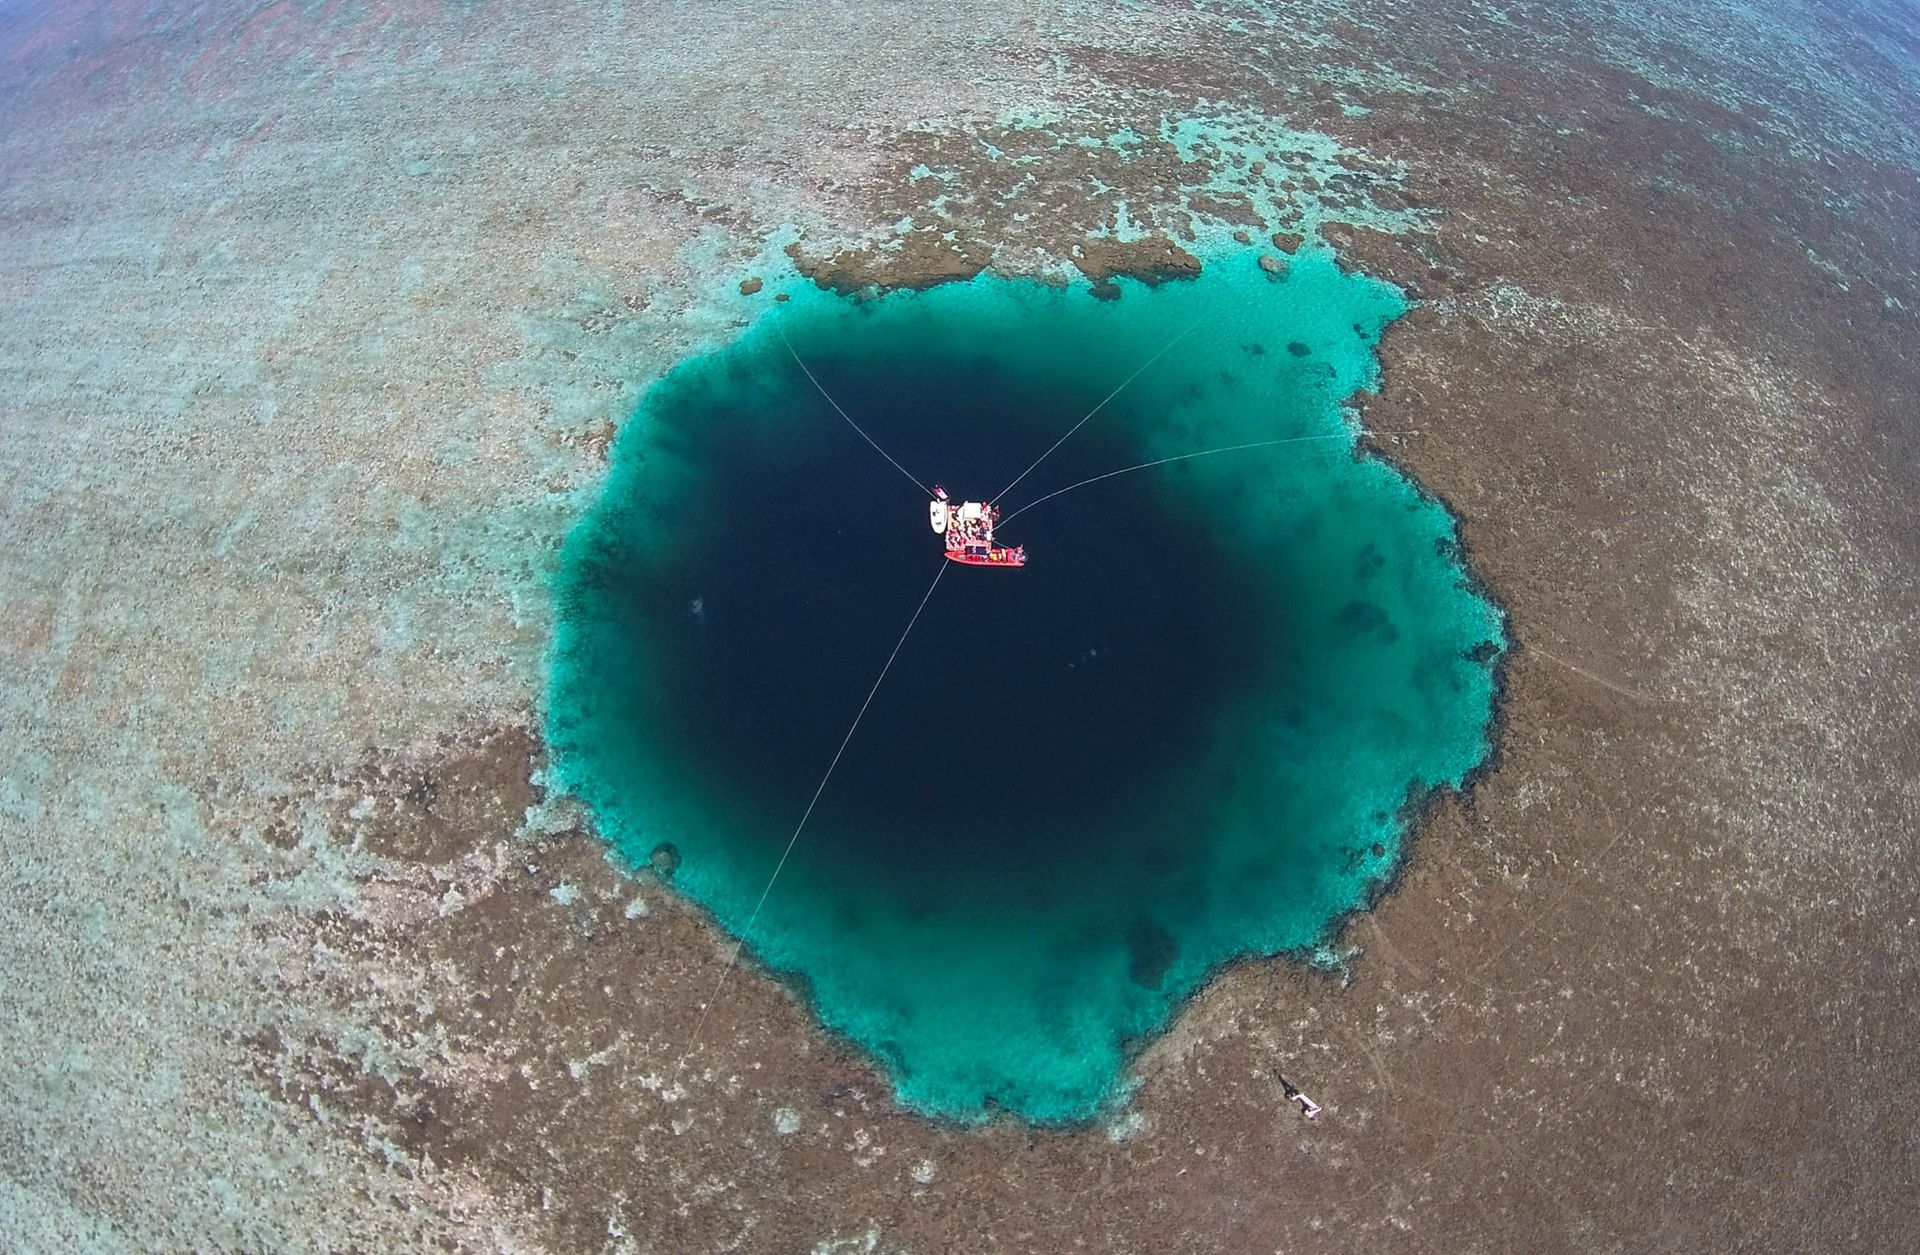 2016年7月24日，中国三沙市政府正式命名西沙群岛永乐环礁的海洋蓝洞为“三沙永乐龙洞”（Sansha Yongle Blue Hole），其被证实为世界已知最深的海洋蓝洞。（视觉中国）